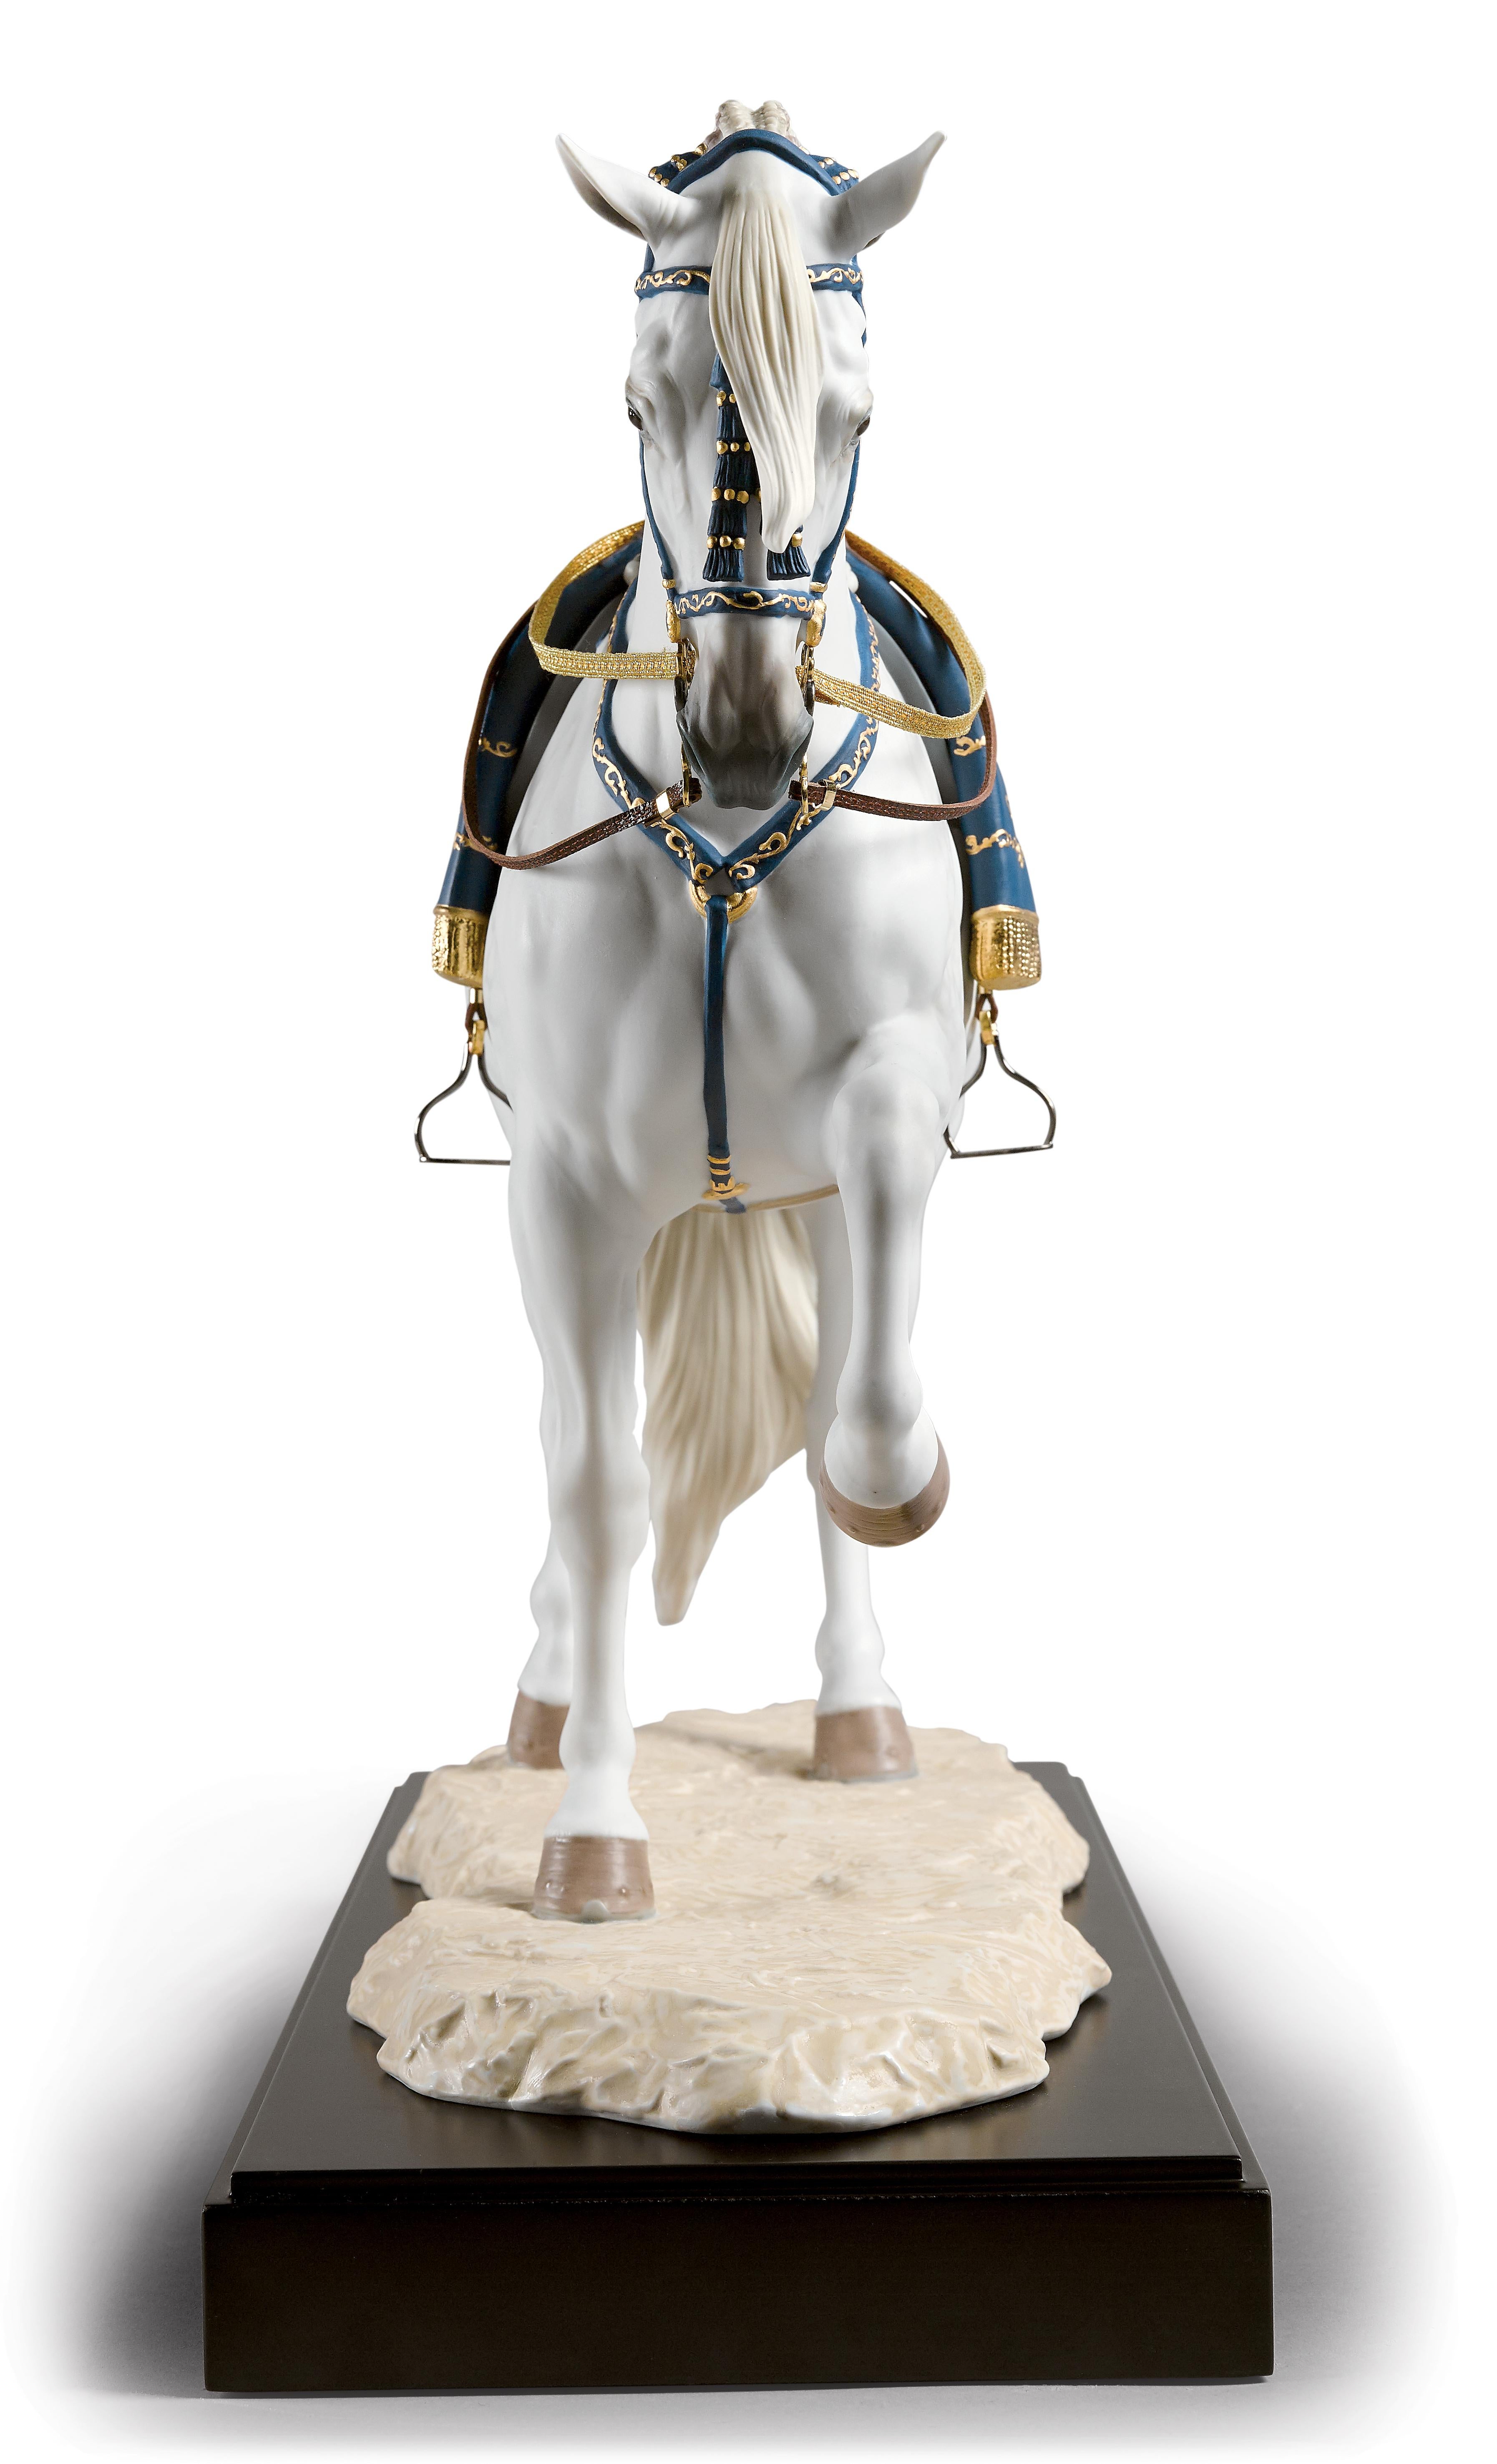 Sculpture en édition limitée d'un cheval espagnol au trot en position, en porcelaine mate, rehaussée de lustre bleu et or sur la tête, le poitrail, la selle et la couverture. Fidèlement inspiré des exemples de l'École royale andalouse d'art